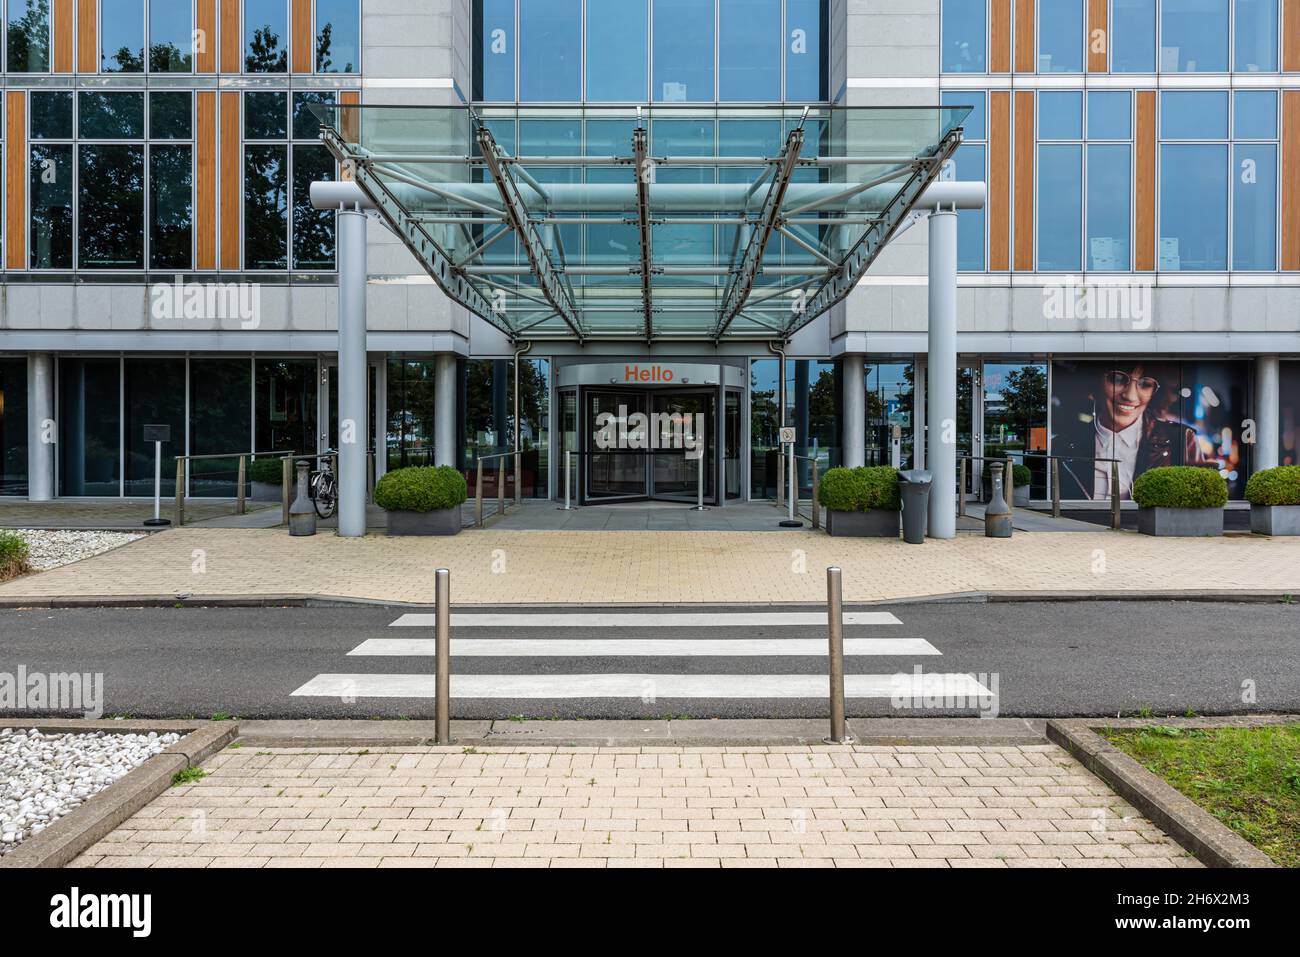 Evere, région de Bruxelles-capitale, Belgique - 20 09 2021: Entrée du bâtiment de bureaux de la société Orange Banque D'Images